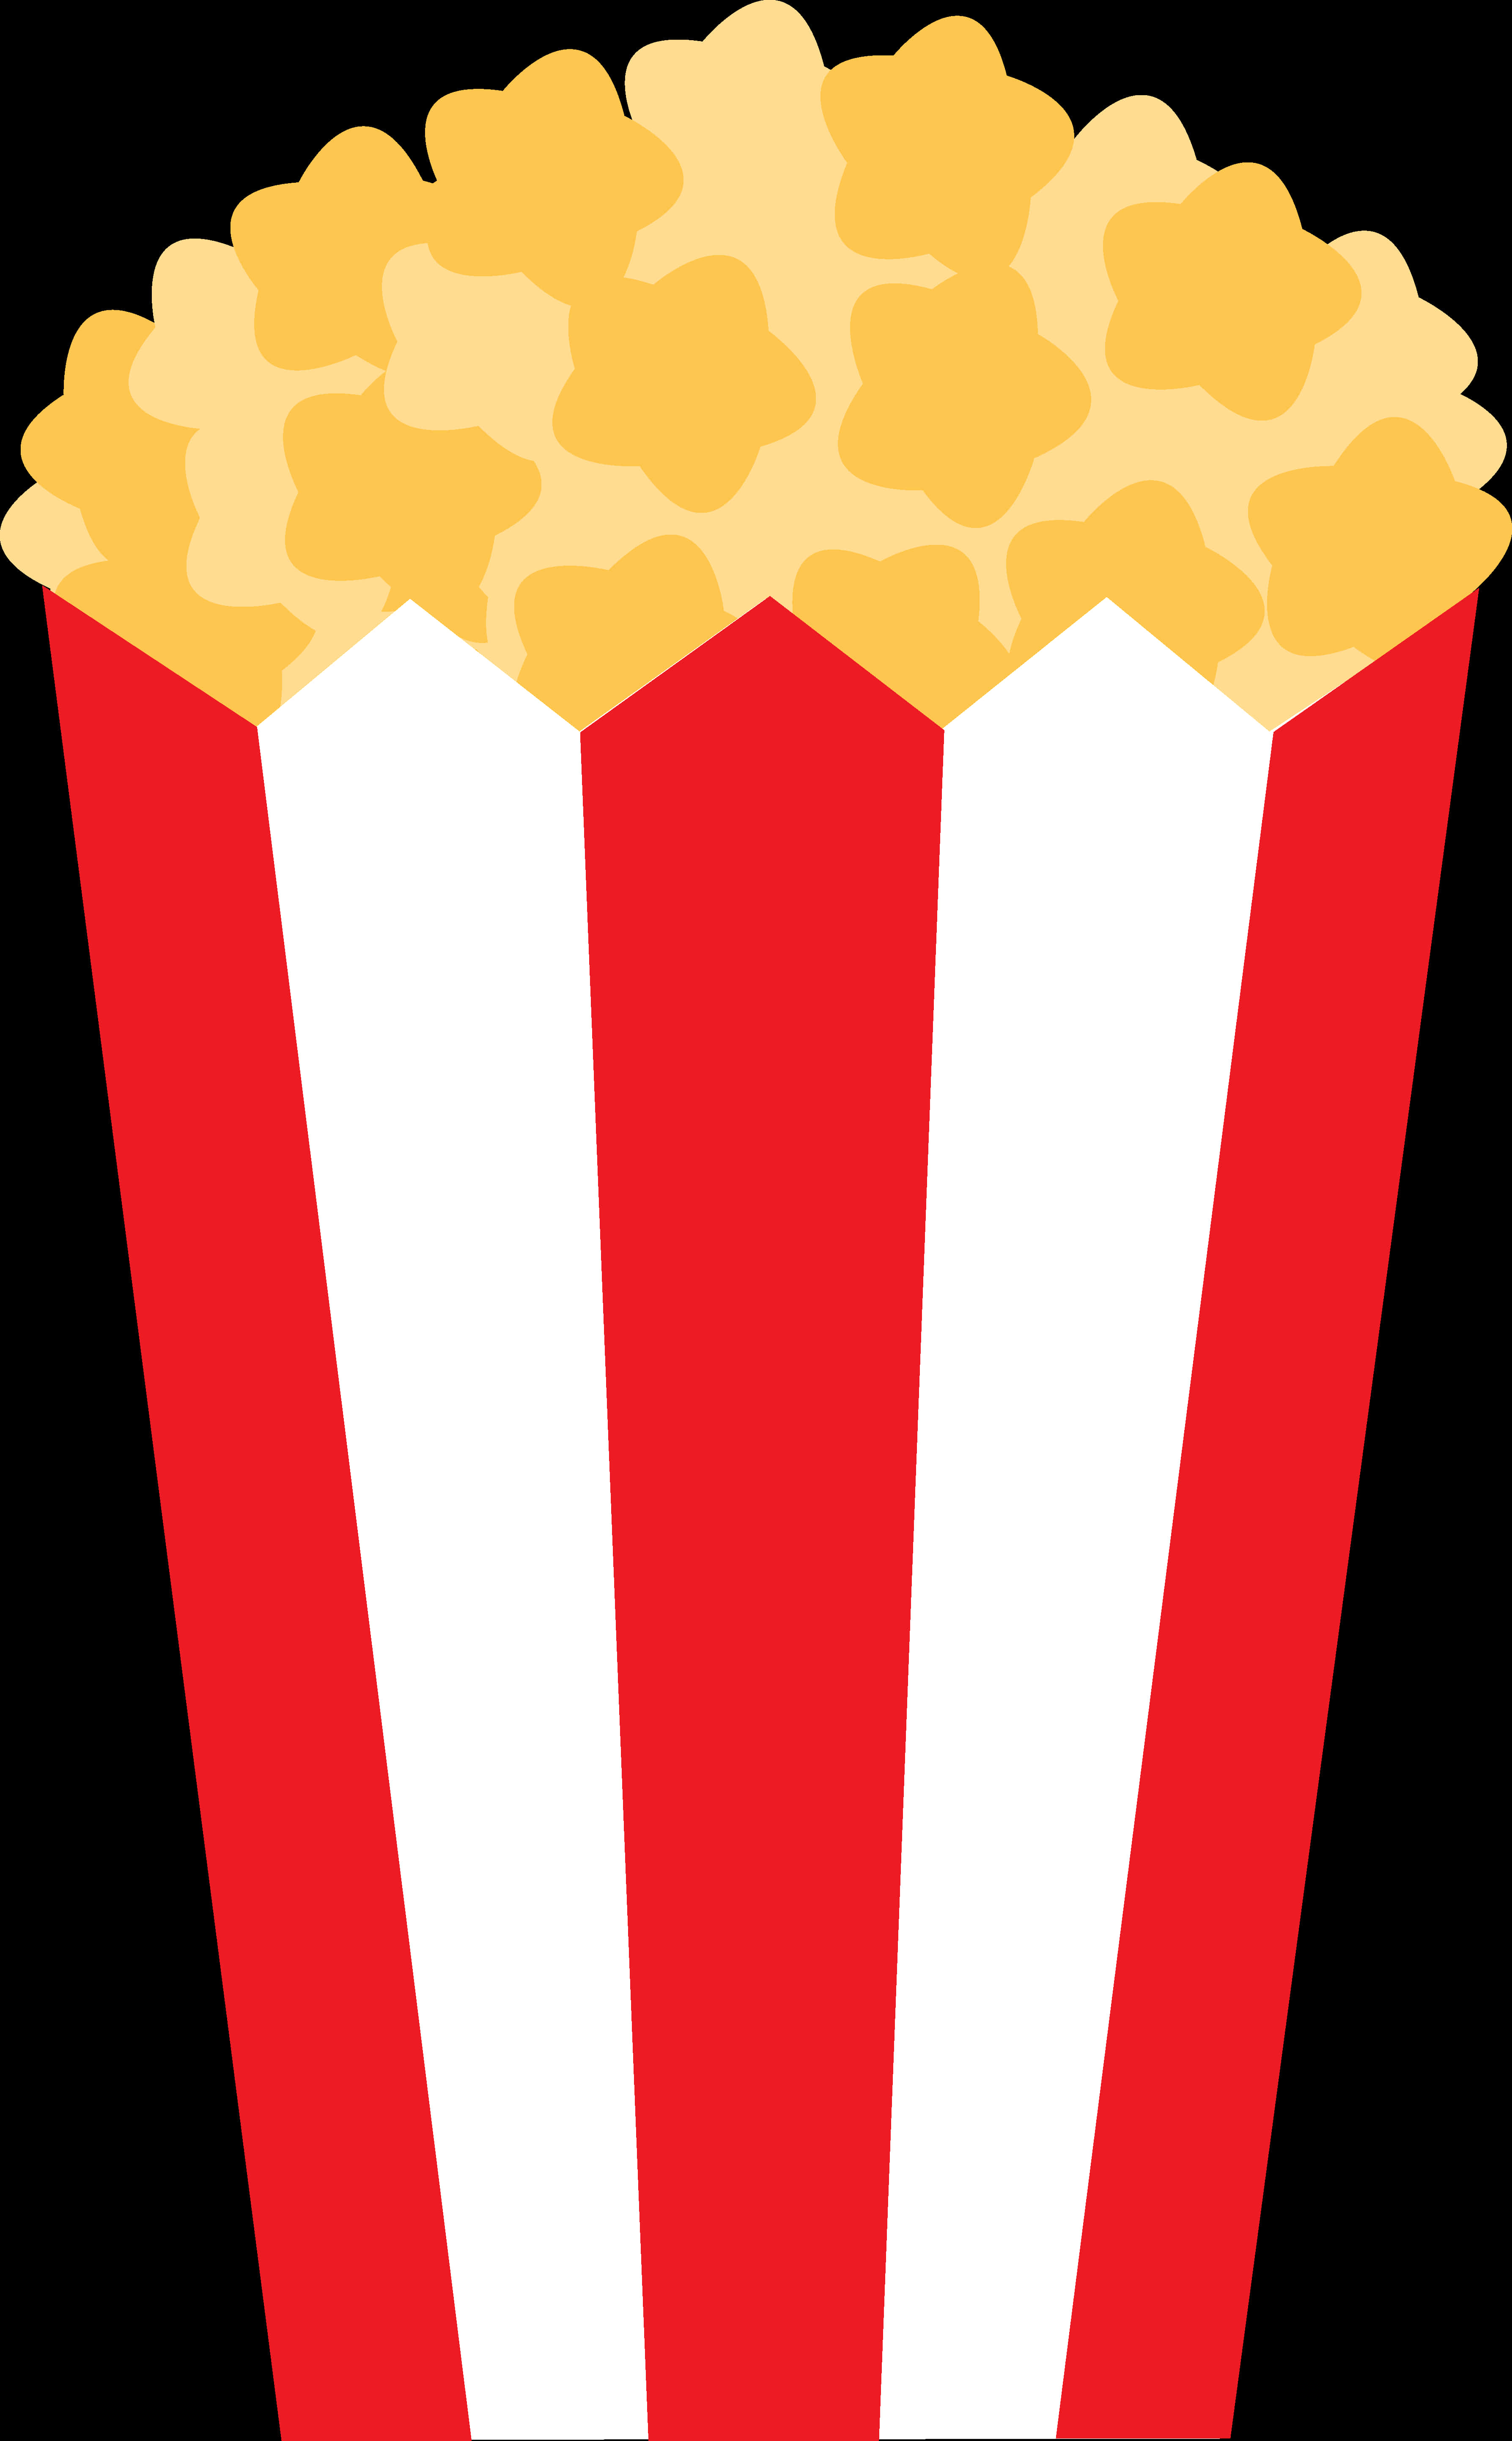 Classic Popcorn Box Clipart